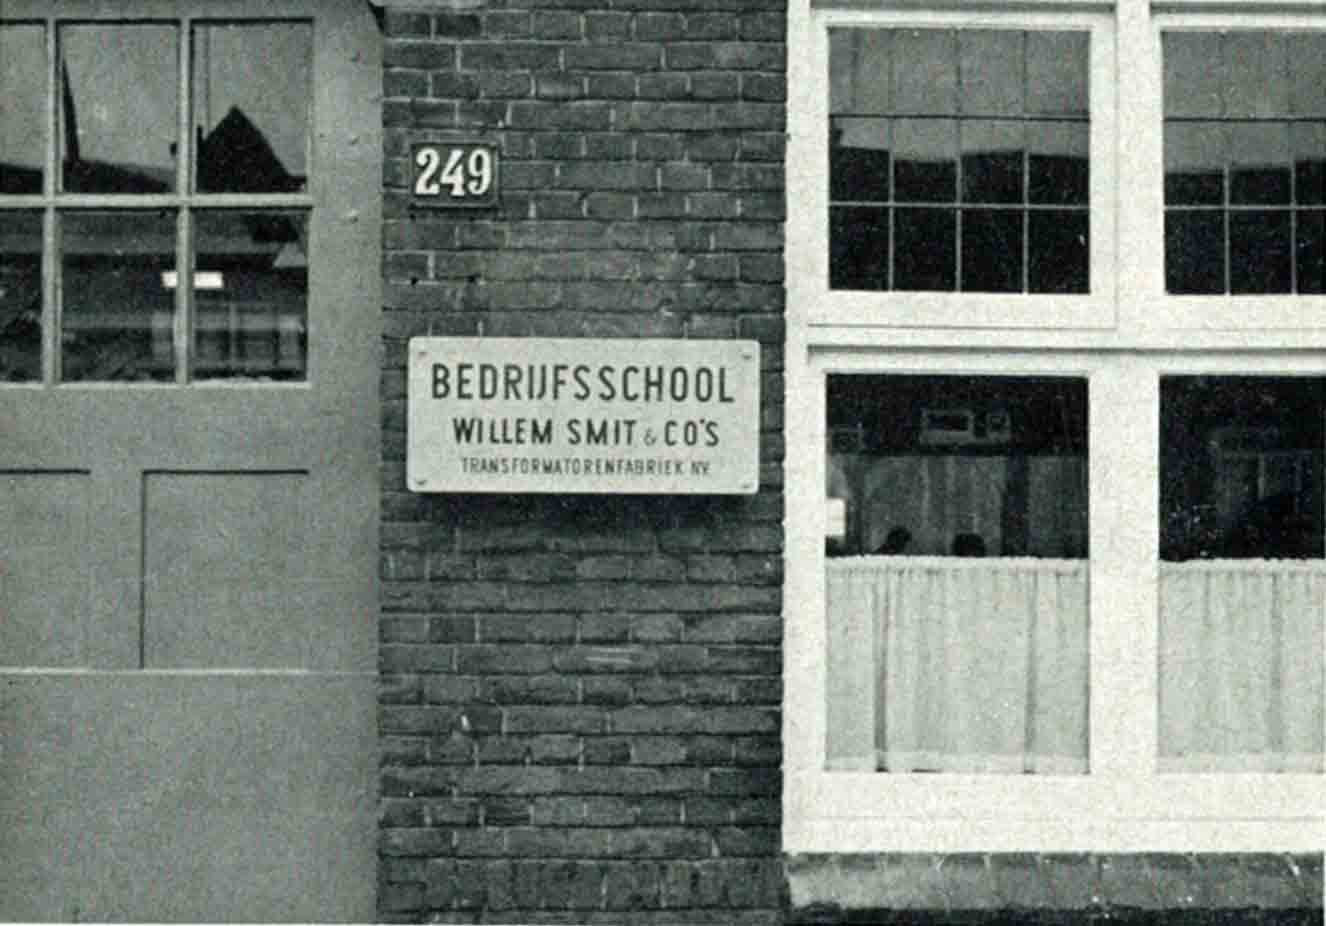 Bemetel Smit Bedrijffschool 1951